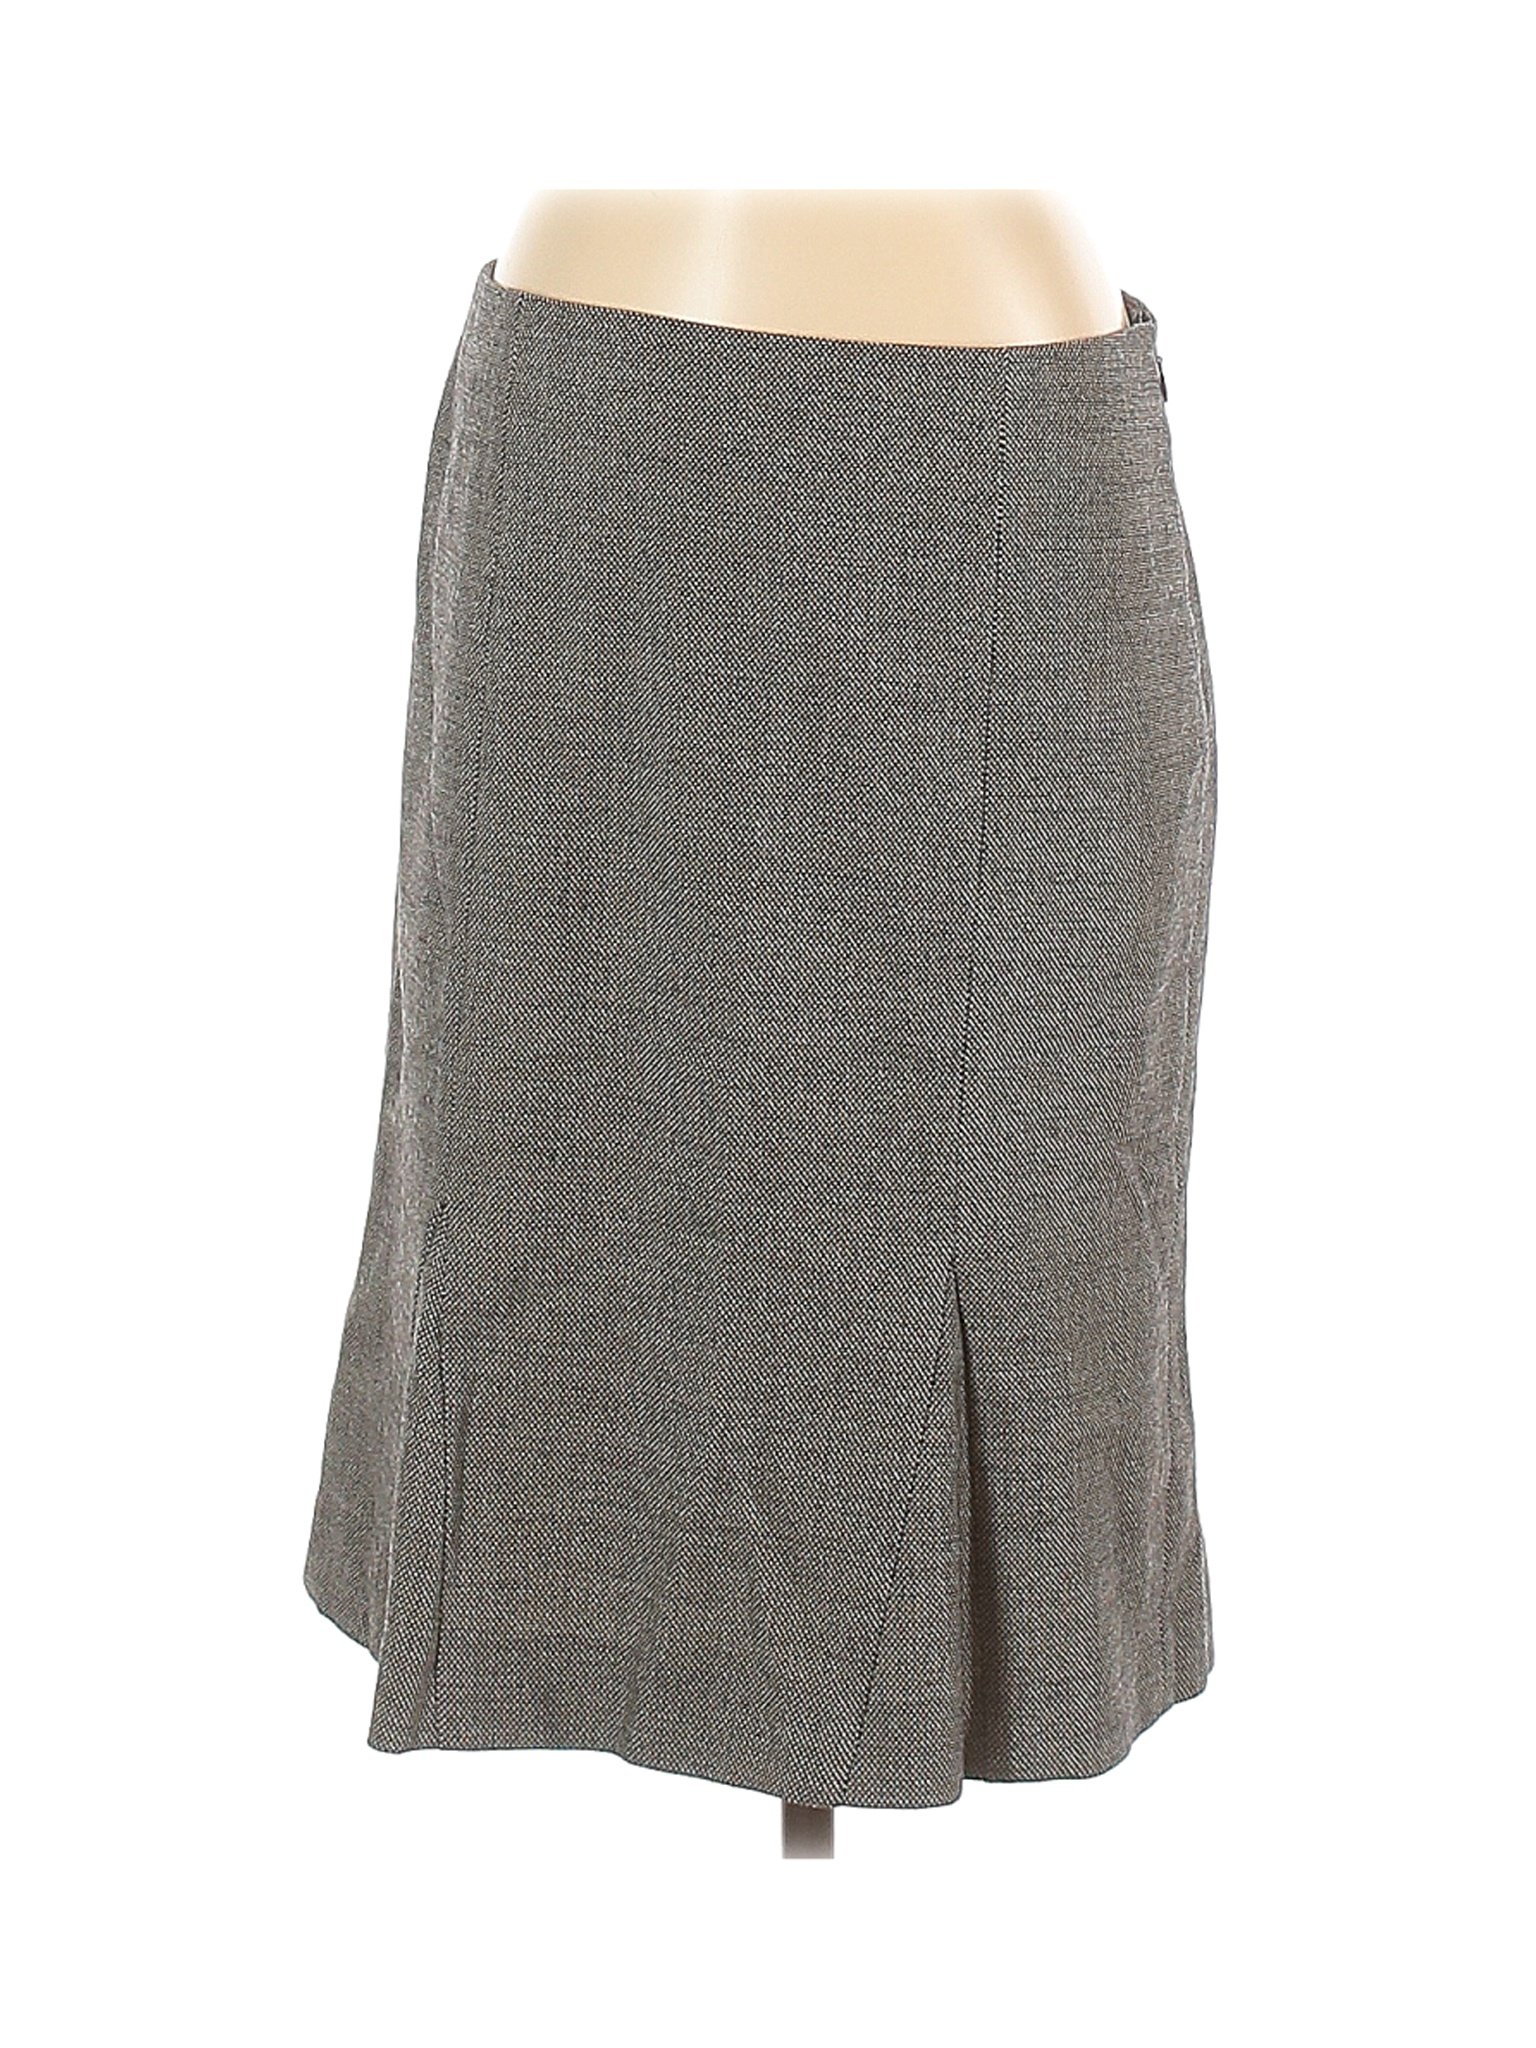 Theory Women Gray Wool Skirt 4 | eBay